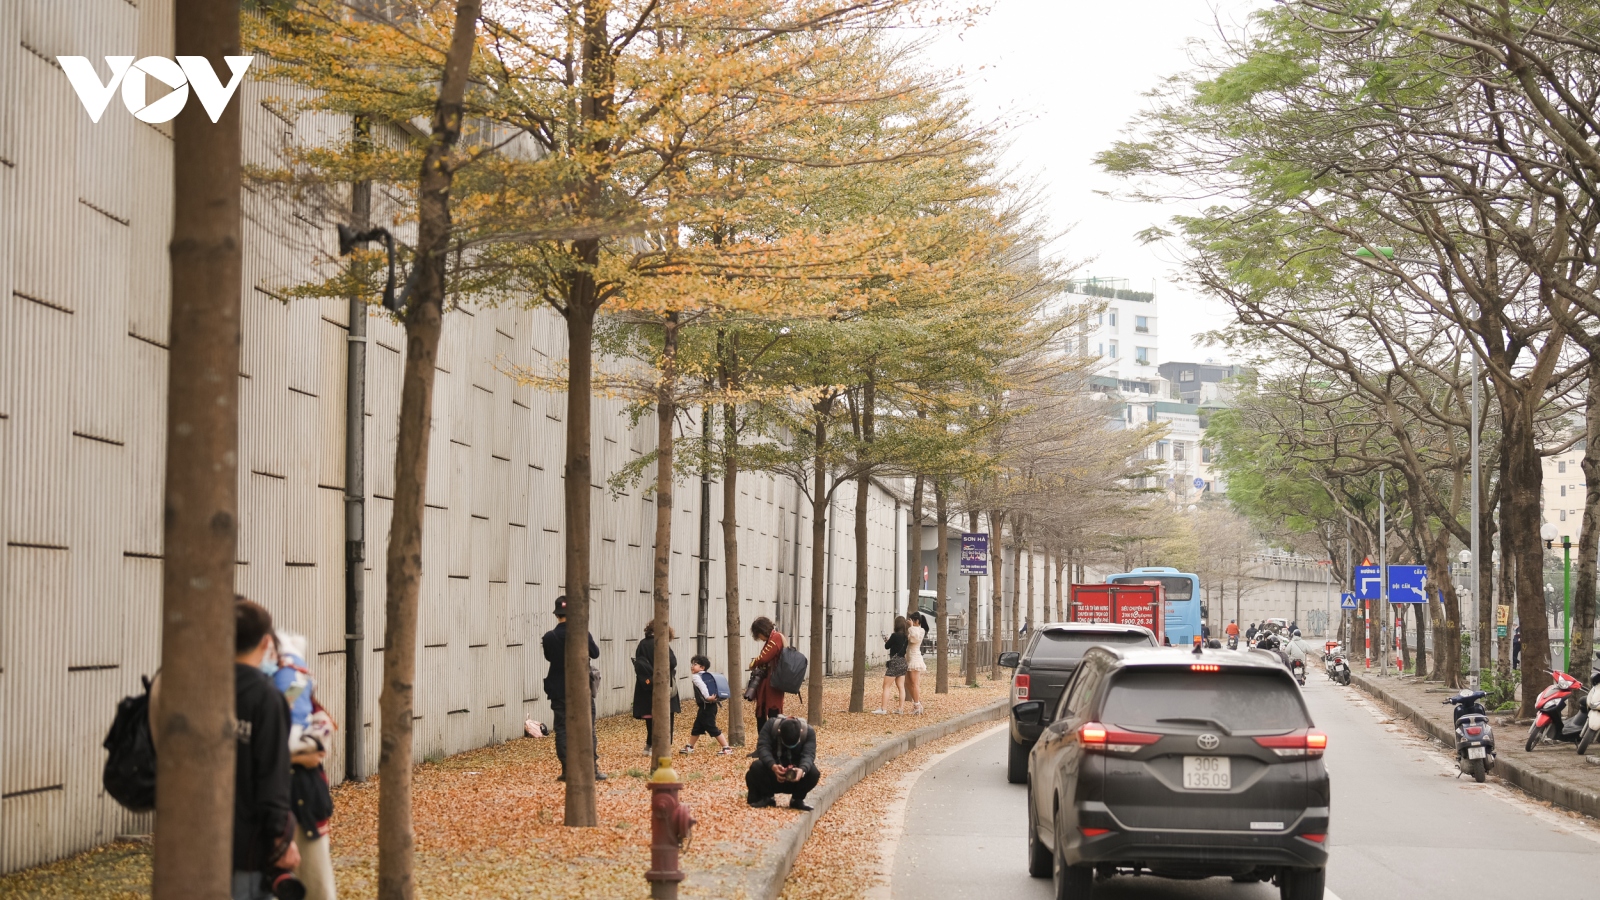 Mê mẩn với con đường lá vàng đẹp như phim Hàn Quốc ở Hà Nội